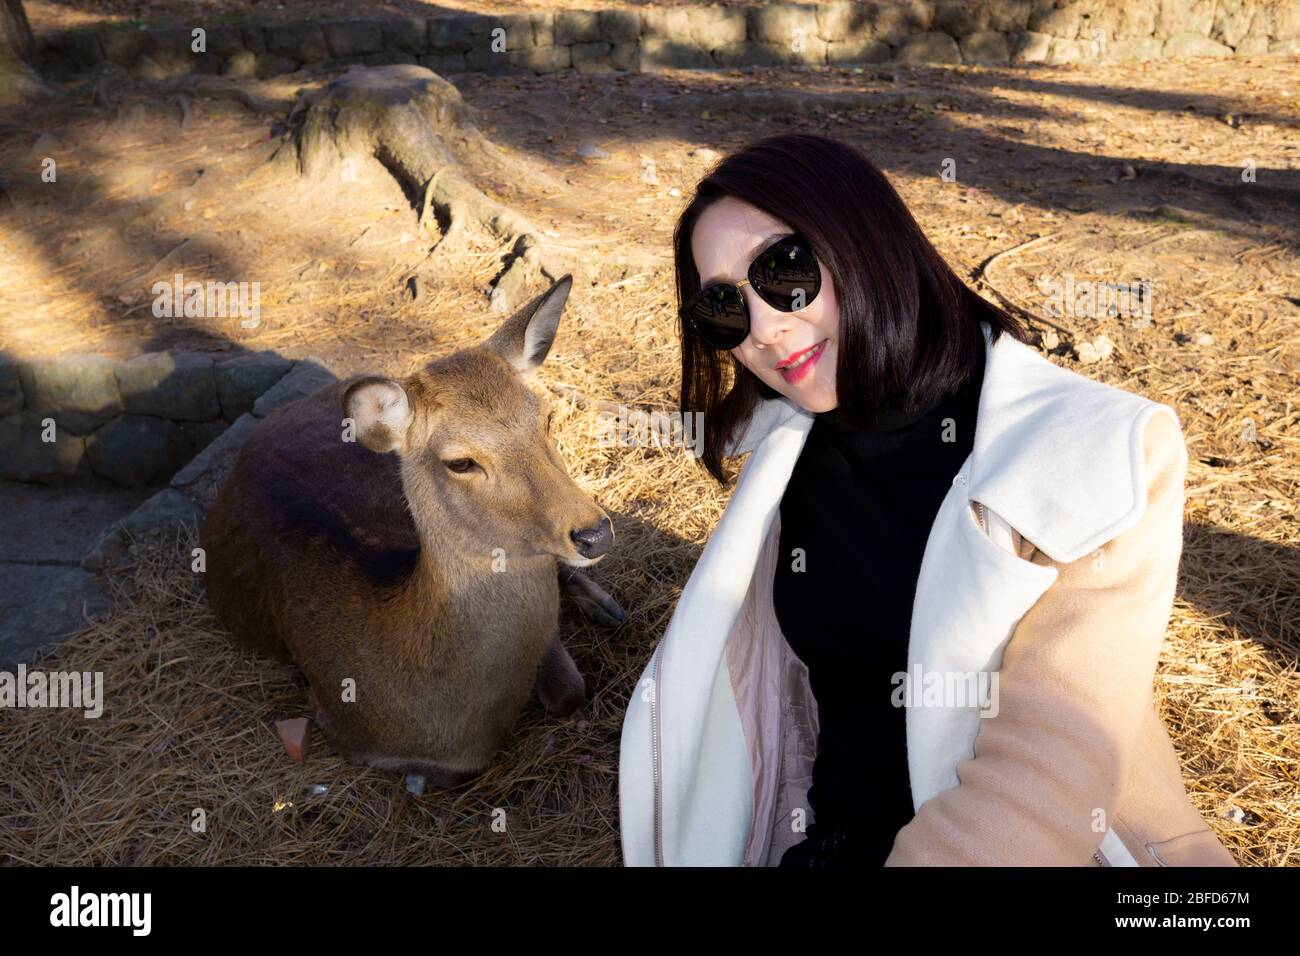 El Parque Nara es un gran parque en el centro de la ciudad de Nara, uno de los parques más antiguos de Japón, establecido en 1880. Más de mil ciervos se han convertido en símbolo. Foto de stock